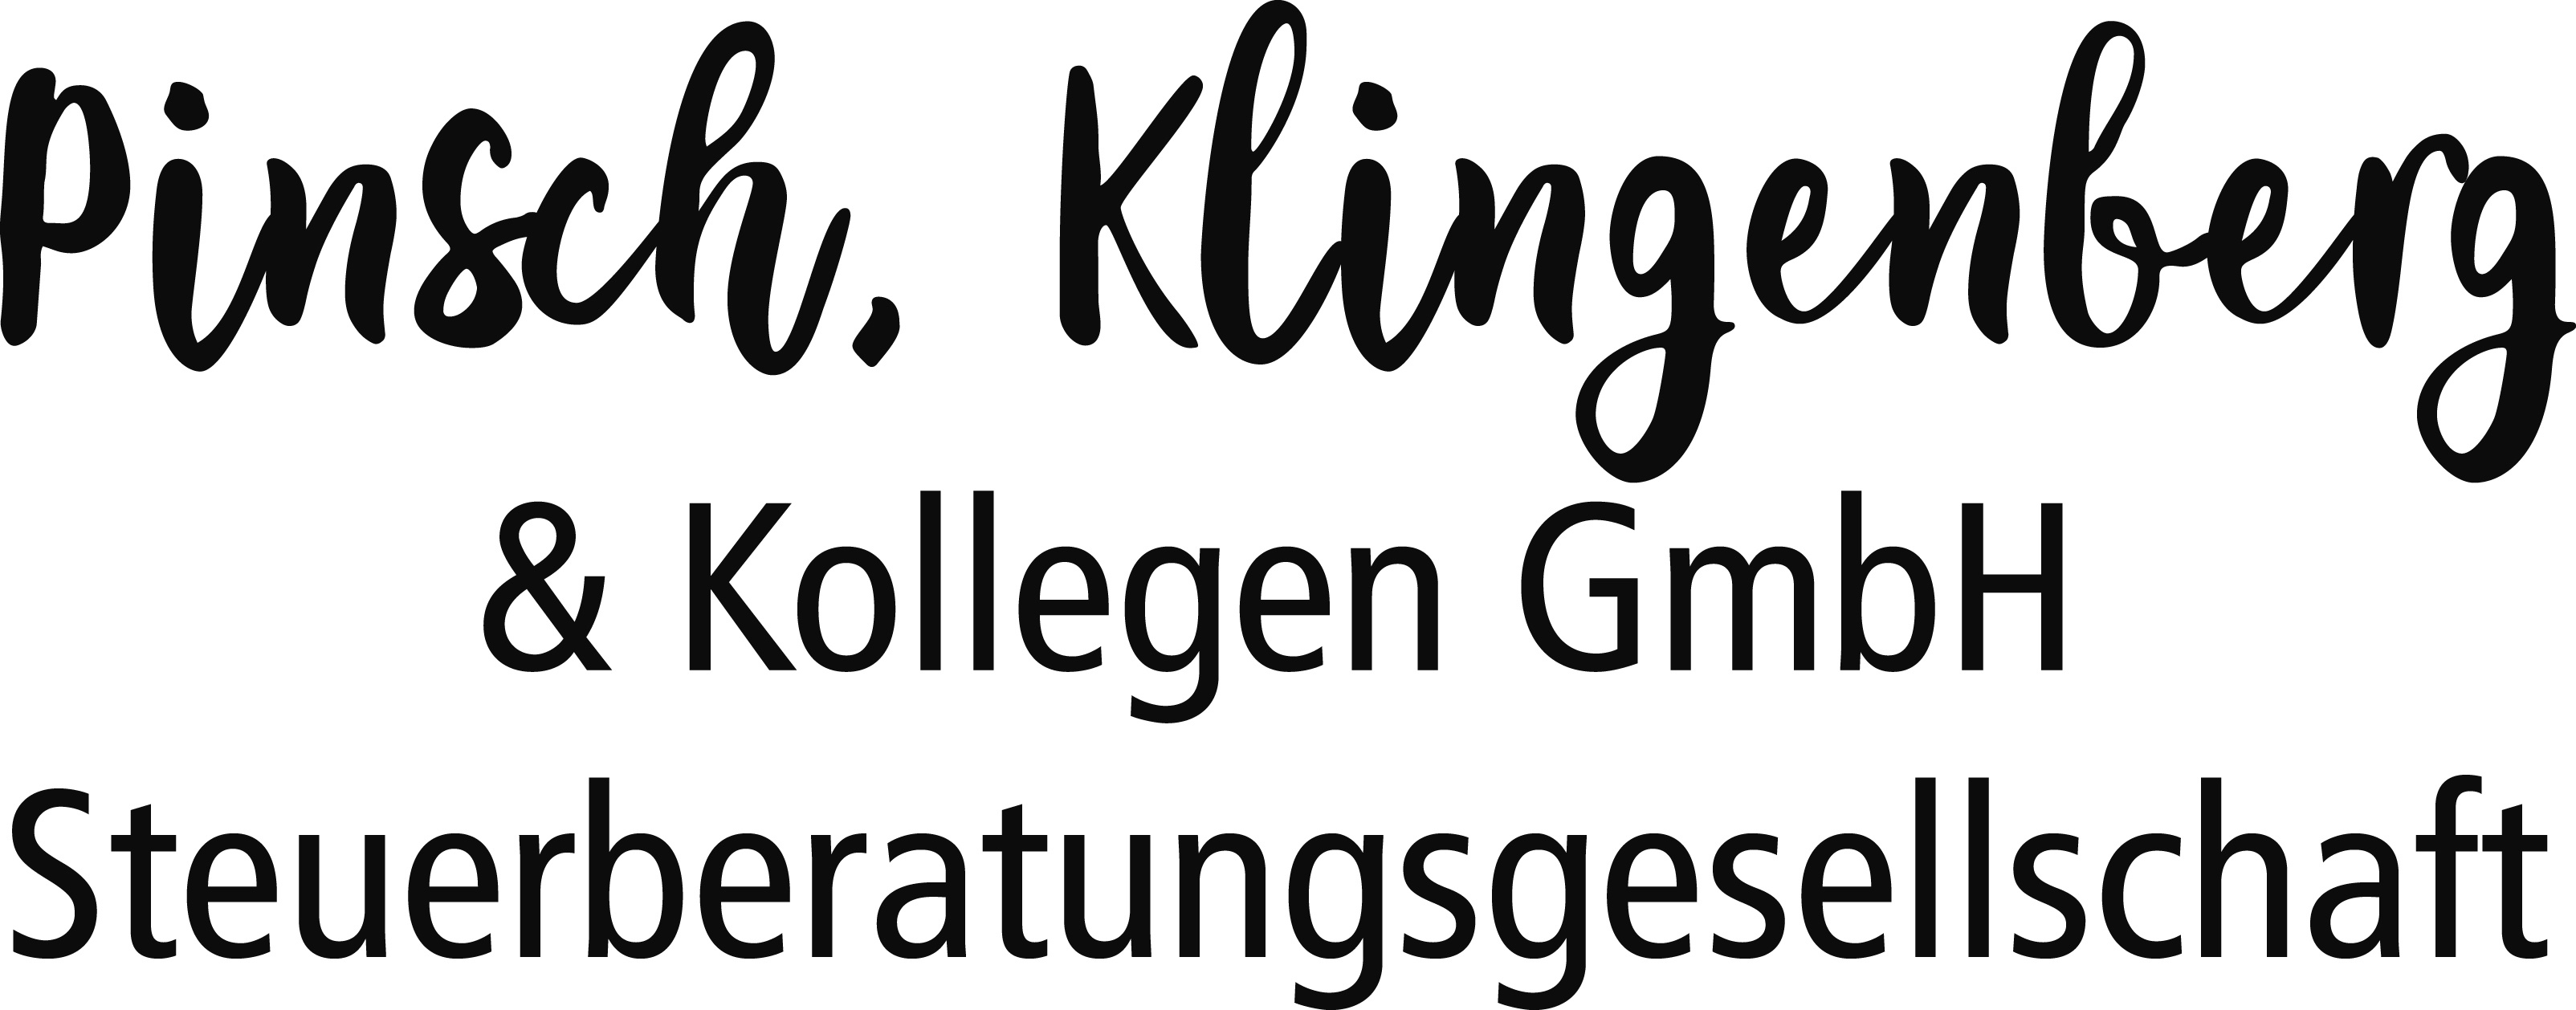 Logo der Firma Pinsch, Klingenberg & Kollegen GmbH Steuerberatungsgesellschaft aus Braunschweig